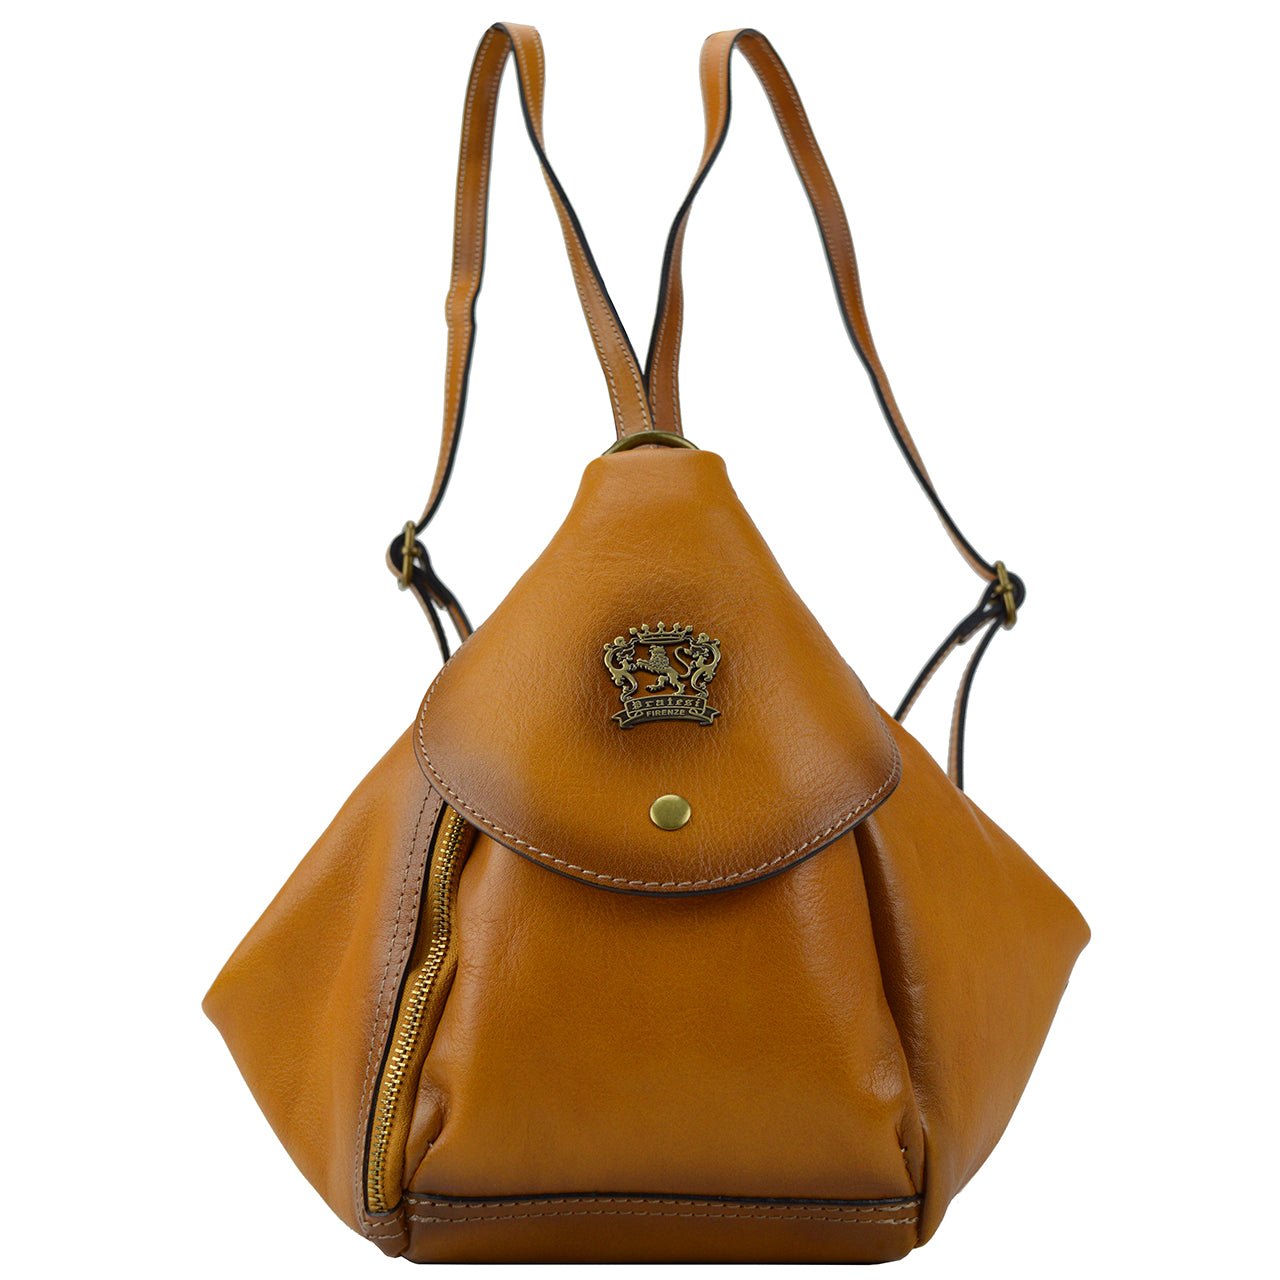 Pratesi Falgano B492 Shoulder Bag in genuine Italian leather